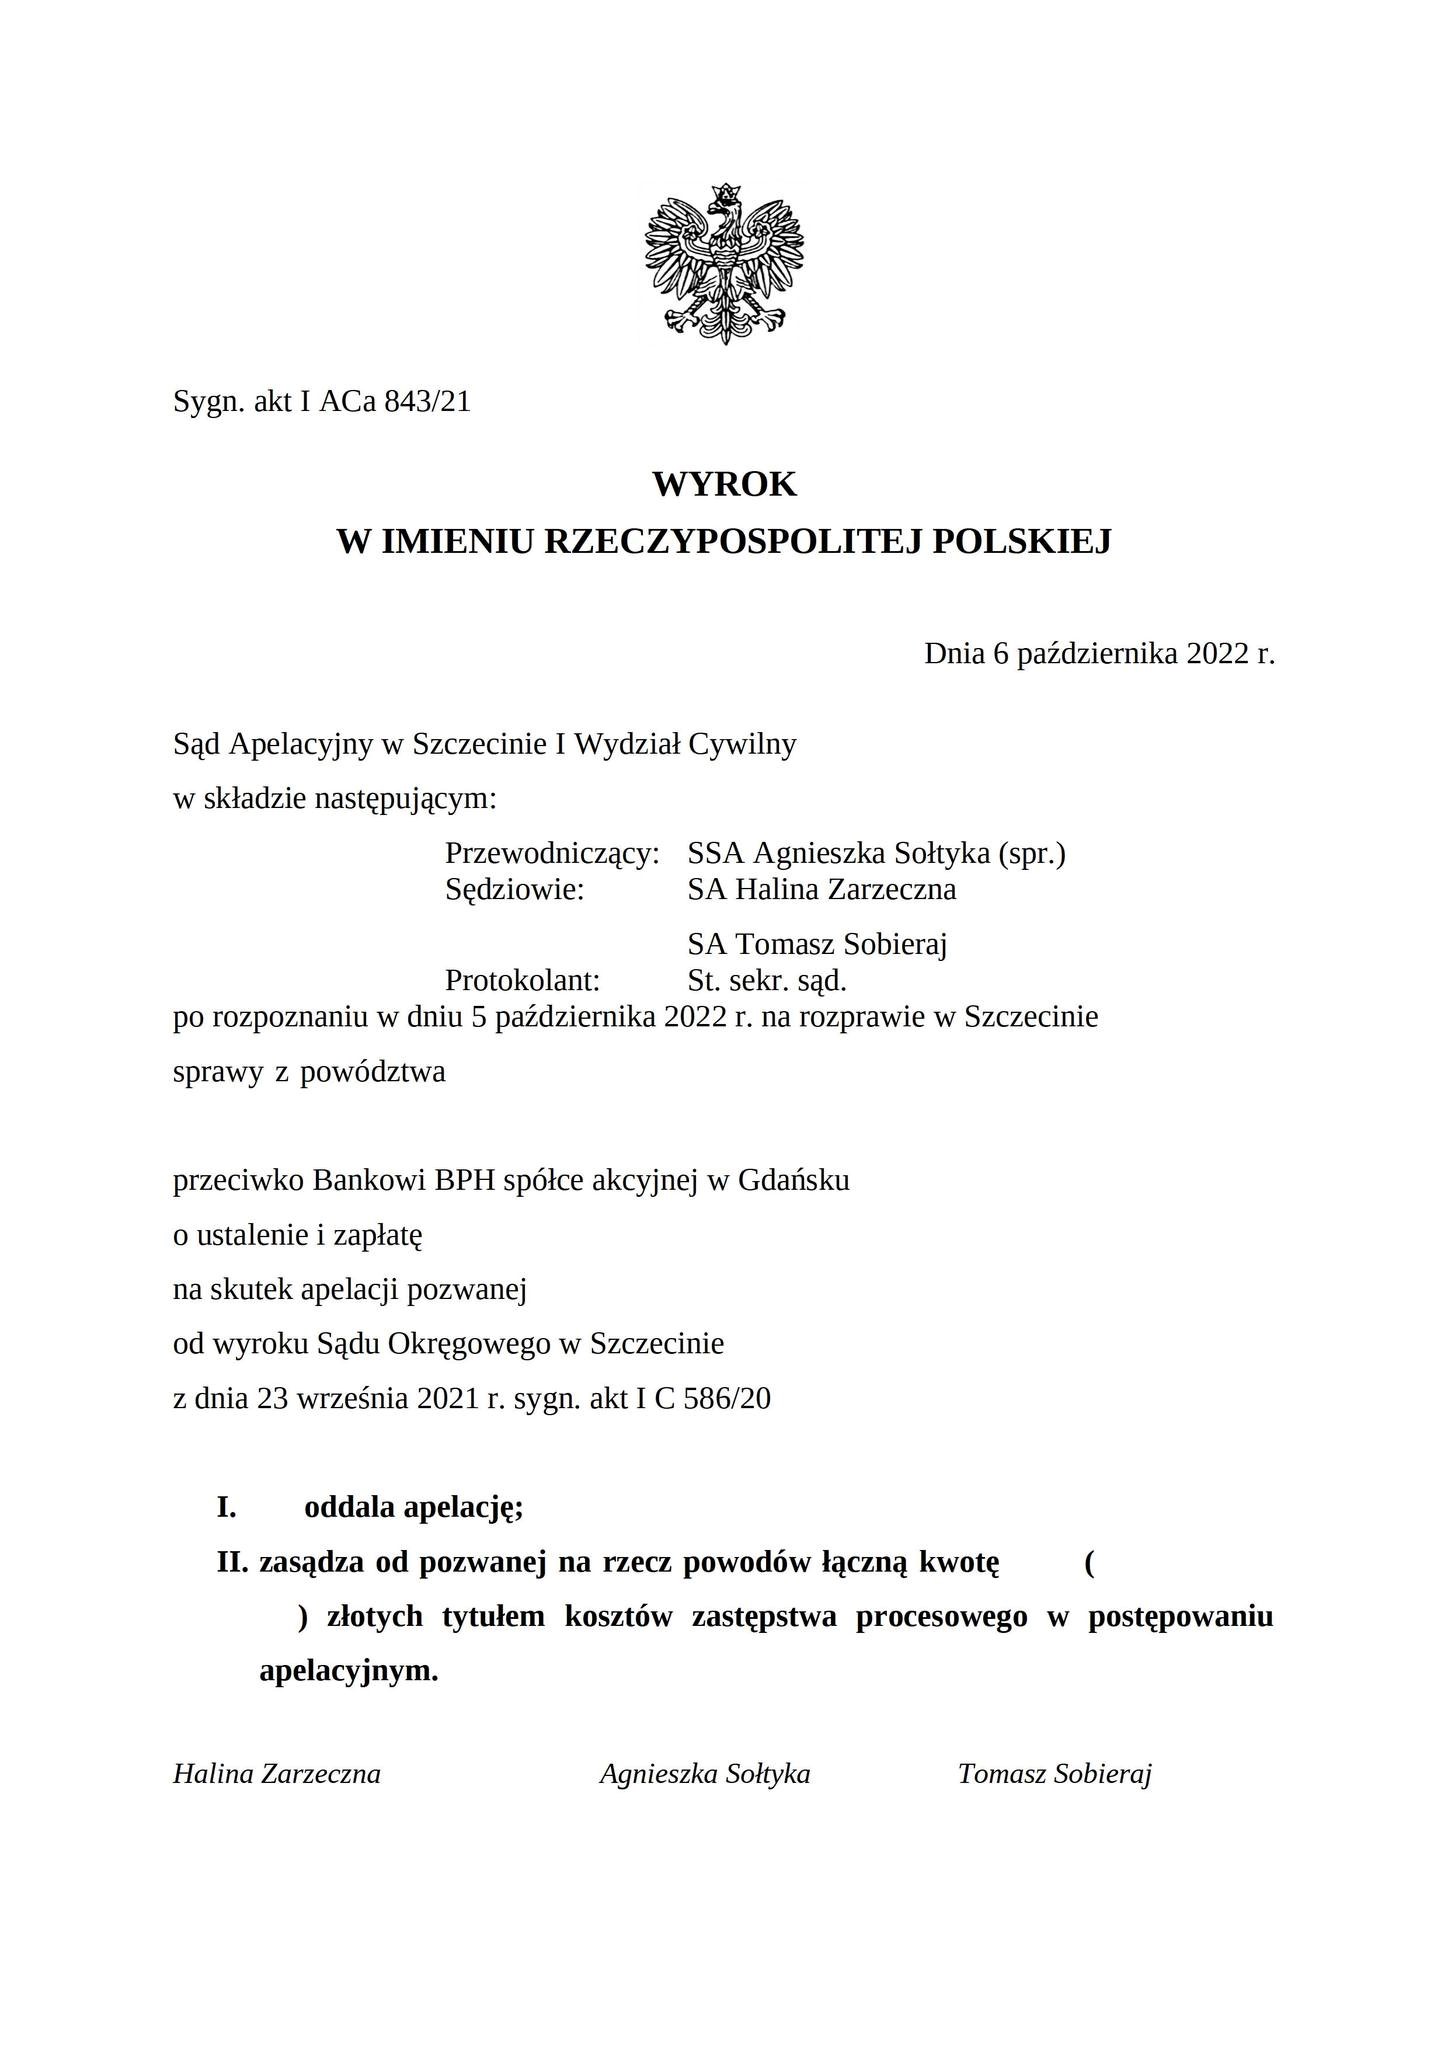 Wyrok Sądu Apelacyjnego w Szczecinie z dnia 6 października 2022 r., sygn. akt I ACa 843/21